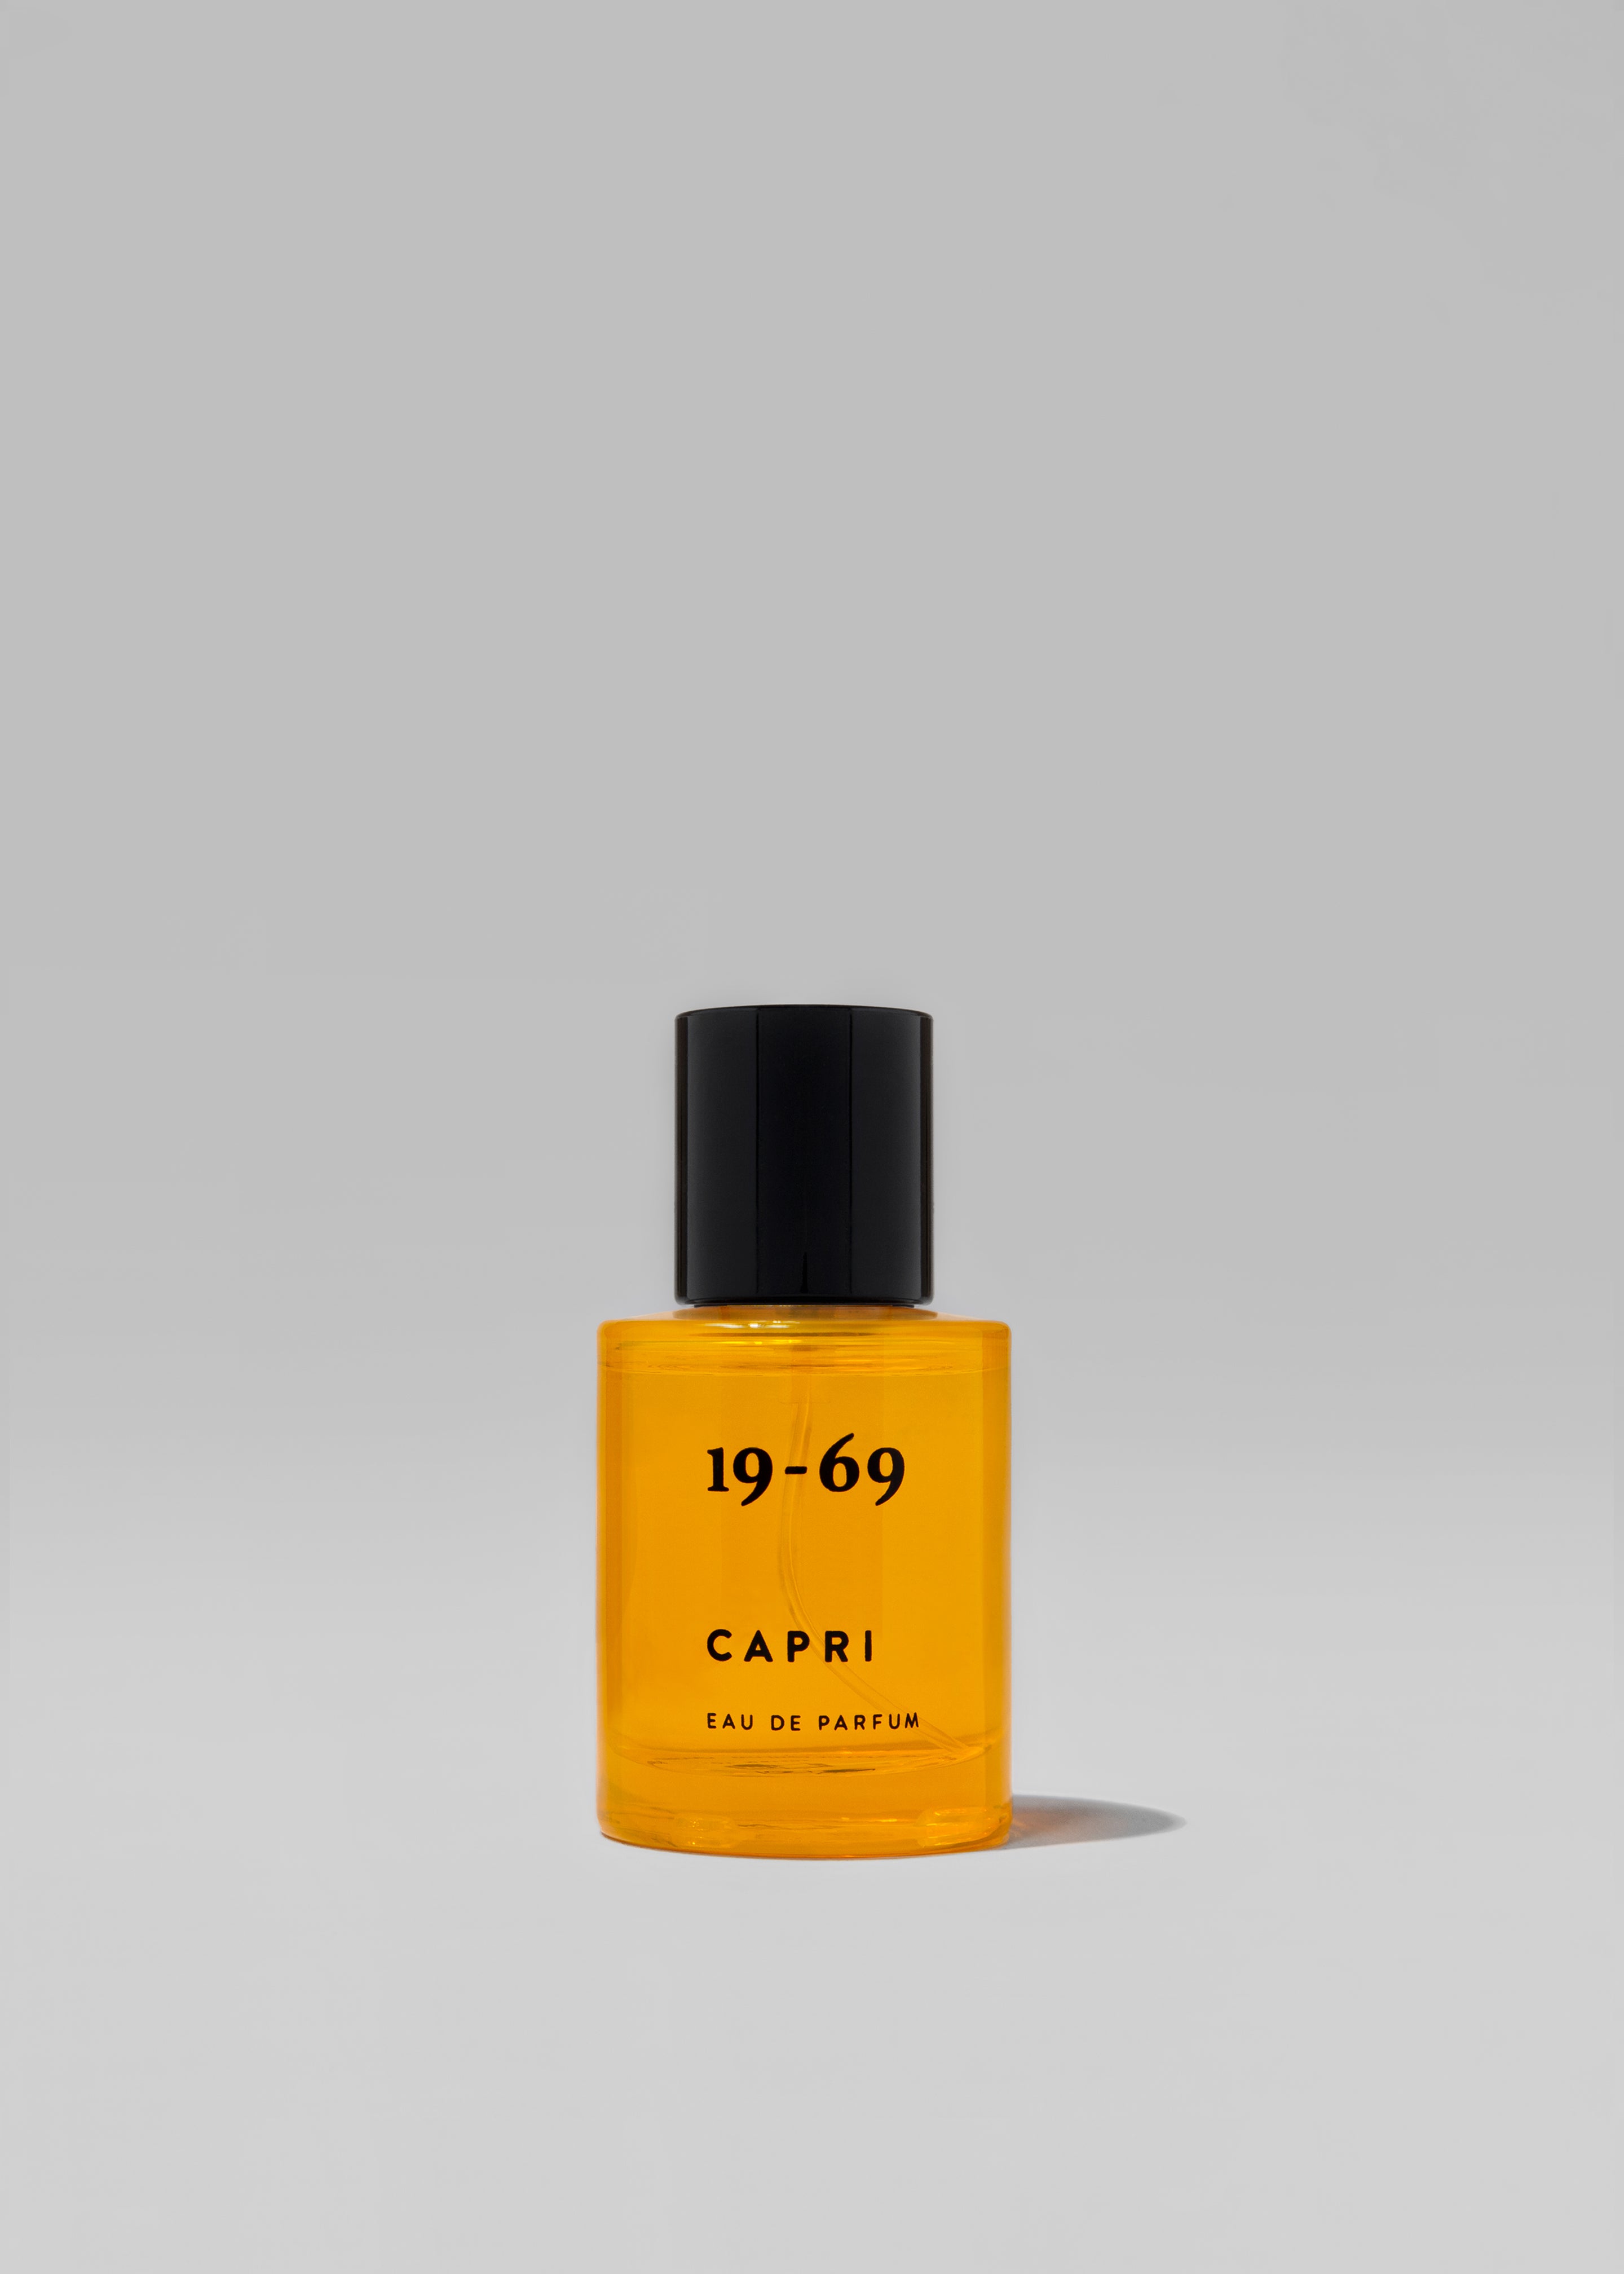 19-69 Capri Eau de Parfum - 3